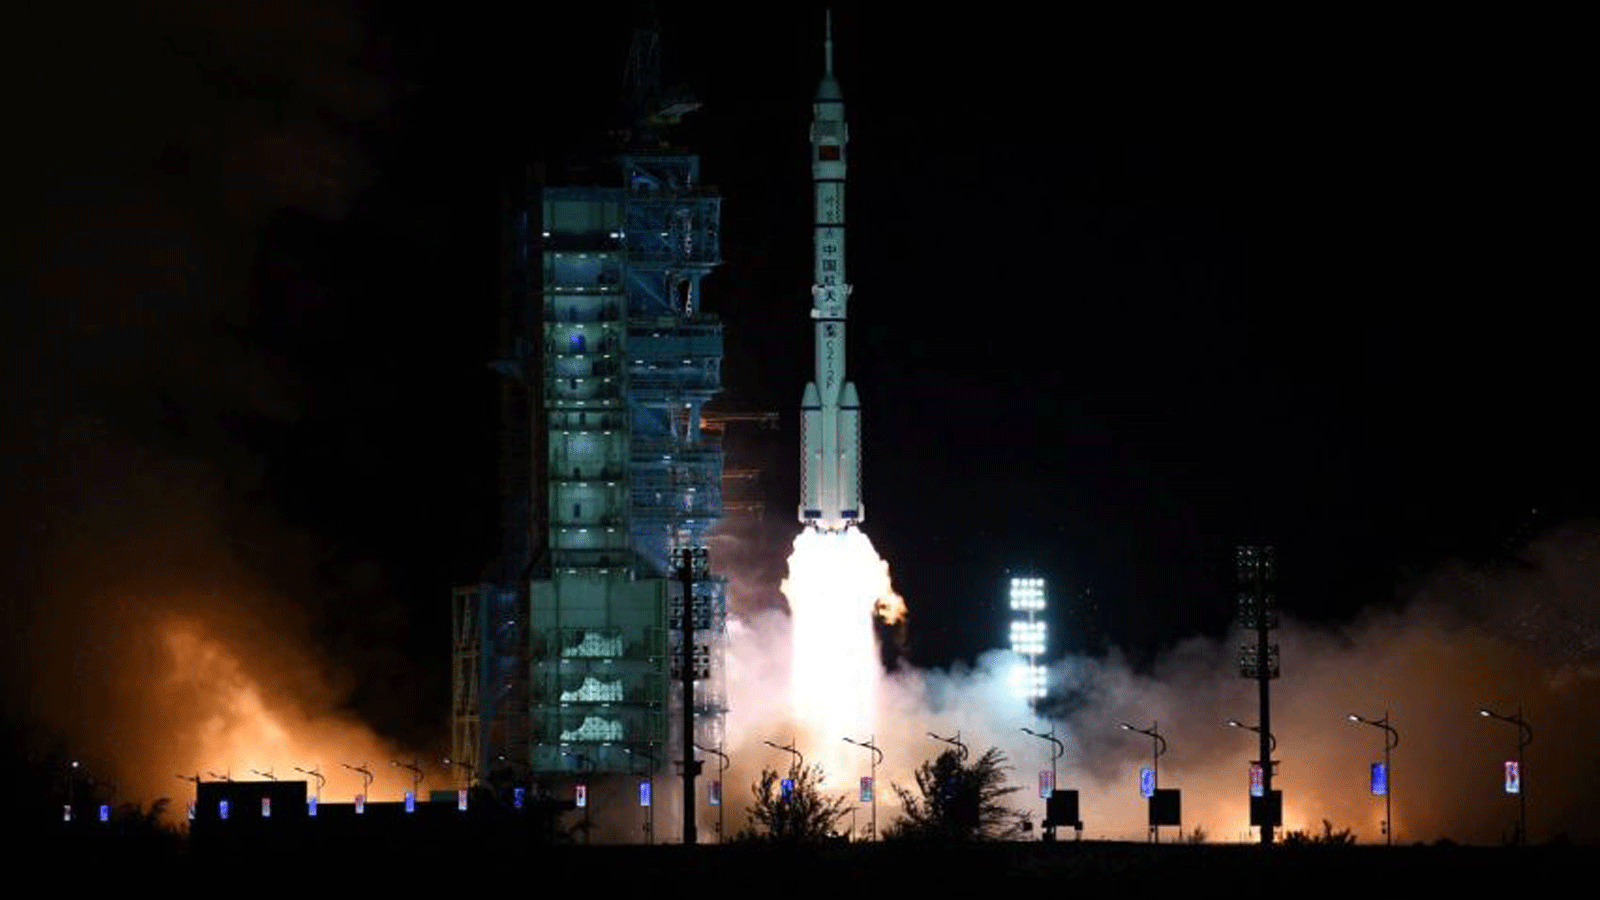 صاروخ حامل من طراز Long March-2F ينطلق من مركز جيوتشيوان لإطلاق الأقمار الصناعية في صحراء غوبي في شمال غرب الصين، في 16 تشرين الأول/أكتوبر 2021.